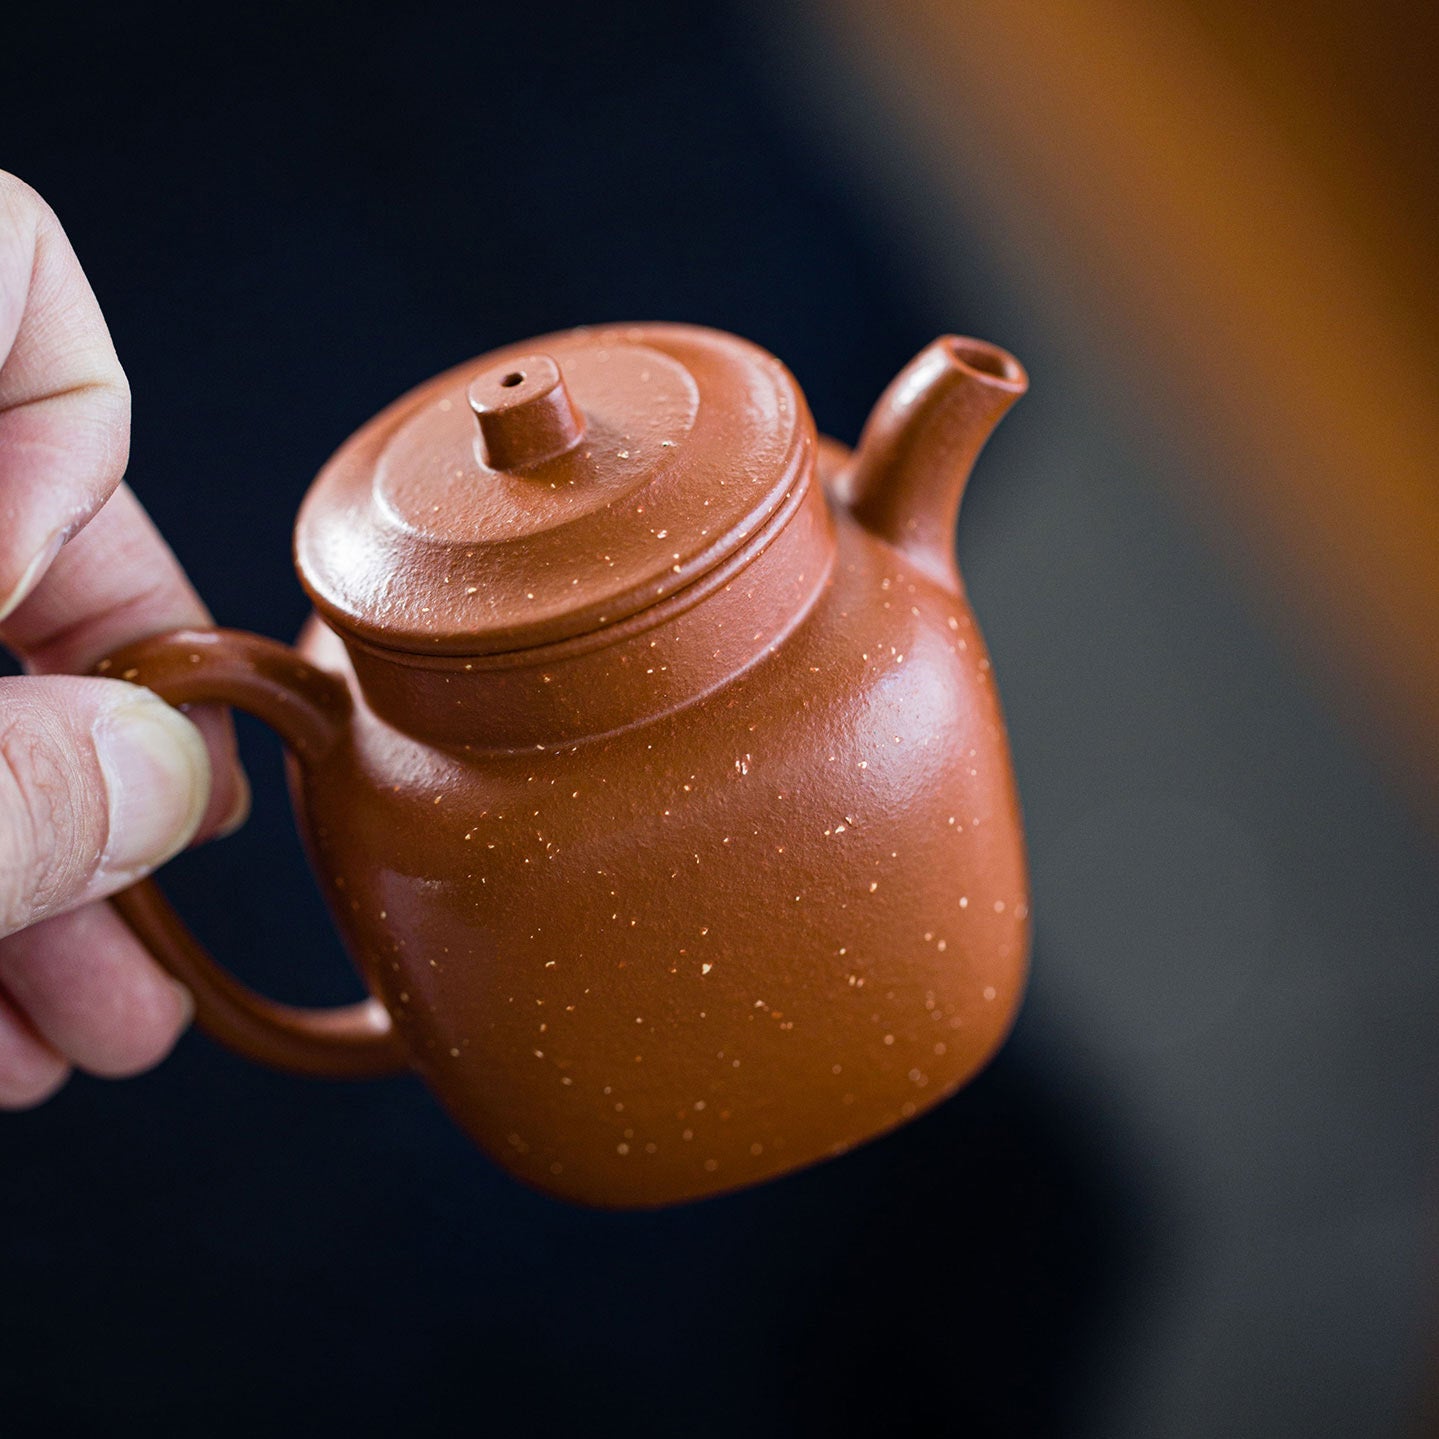 Zhong Shi Yixing Teapot 150ml